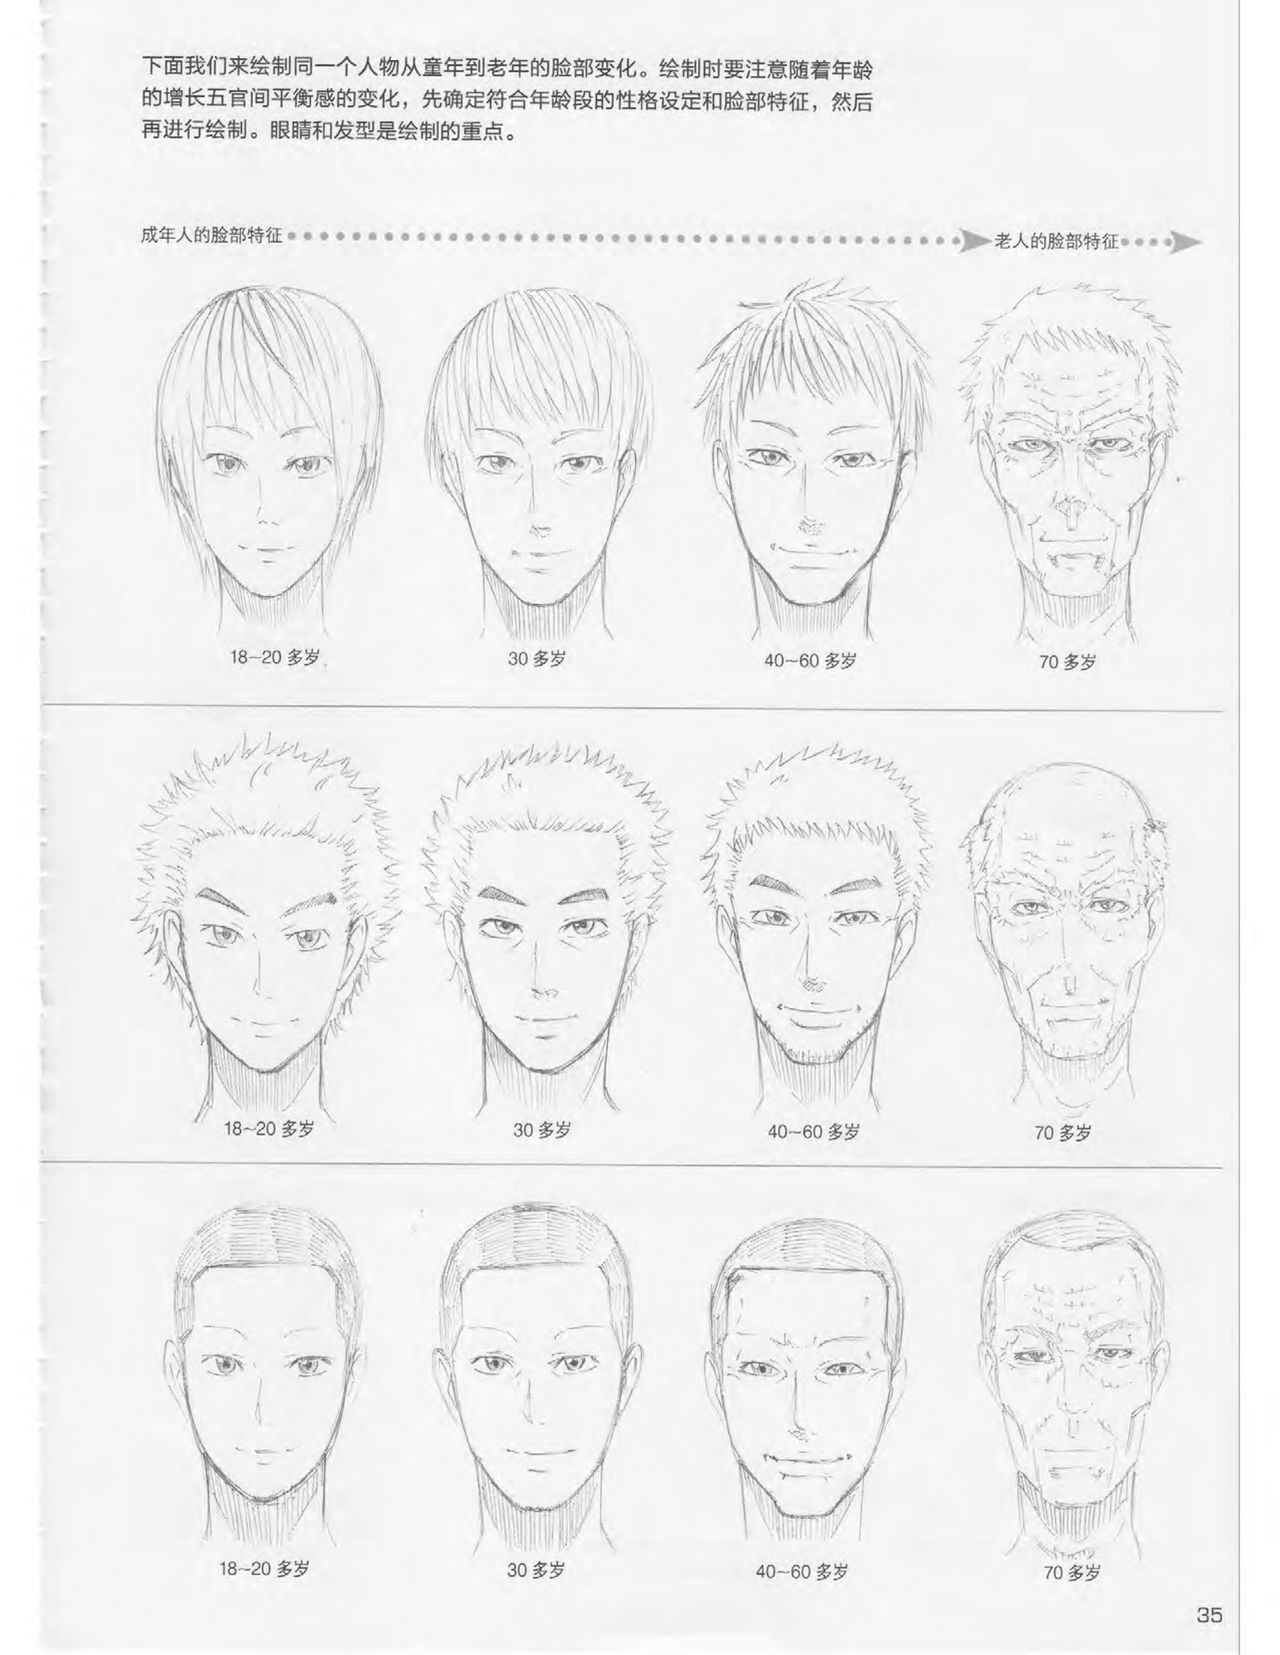 Japanese Manga Master Lecture 3: Lin Akira and Kakumaru Maru Talk About Glamorous Character Modeling 35